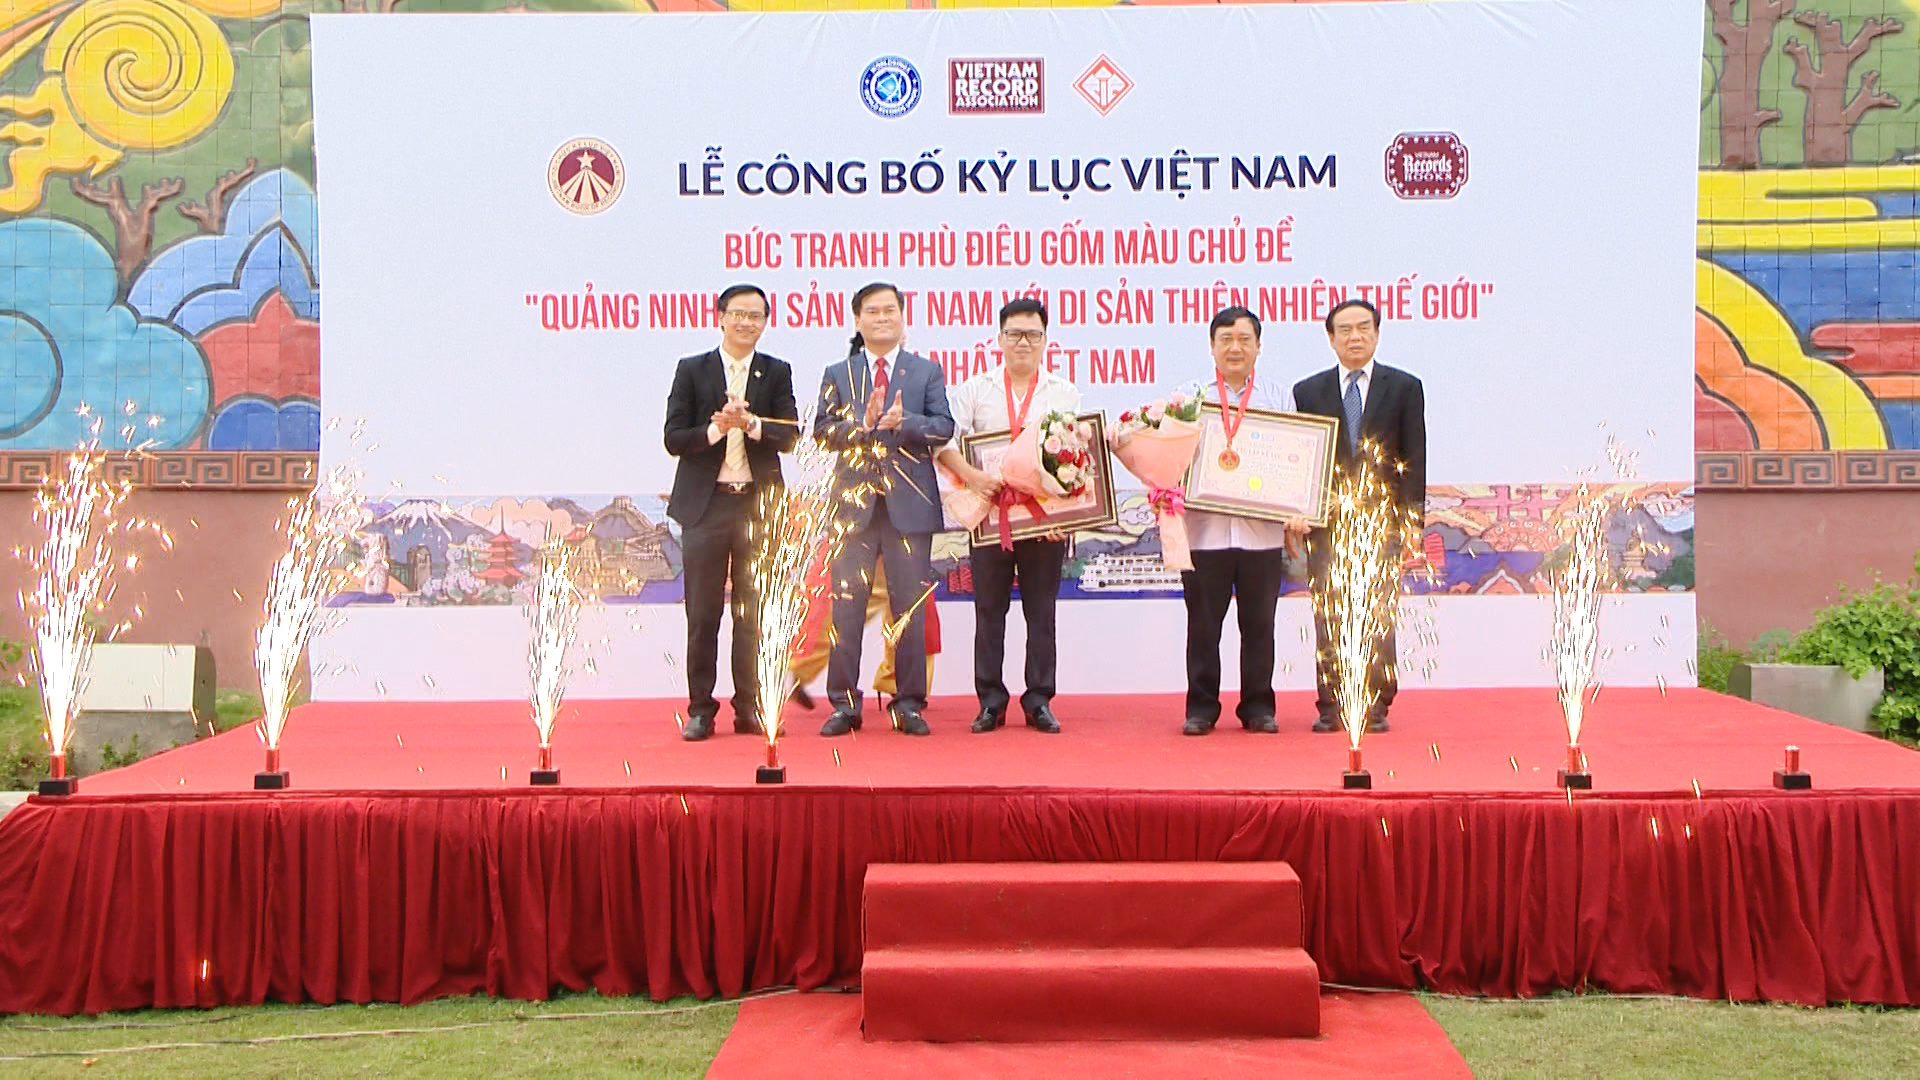 Tổ chức kỷ lục Việt Nam trao bằng chứng nhận cho thành phố Hạ Long